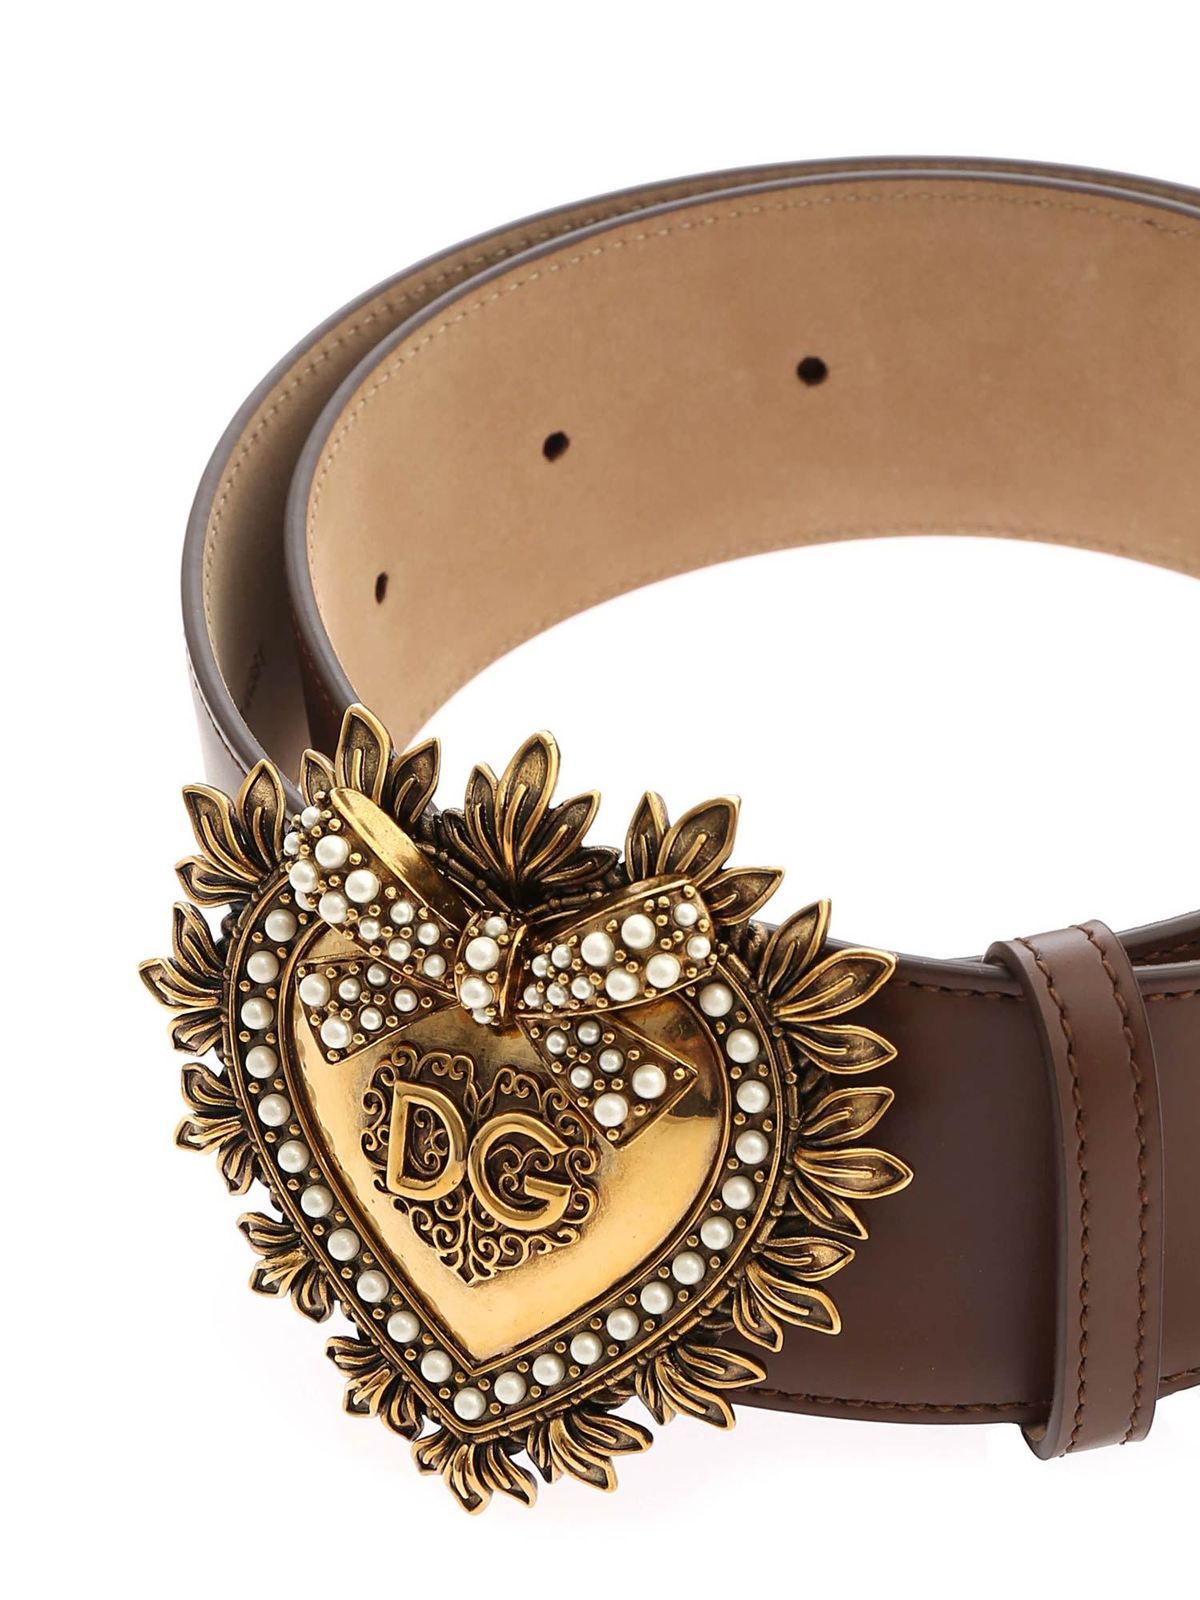 Dolce & Gabbana - Devotion belt in brown - belts - BE1316AK8618N128